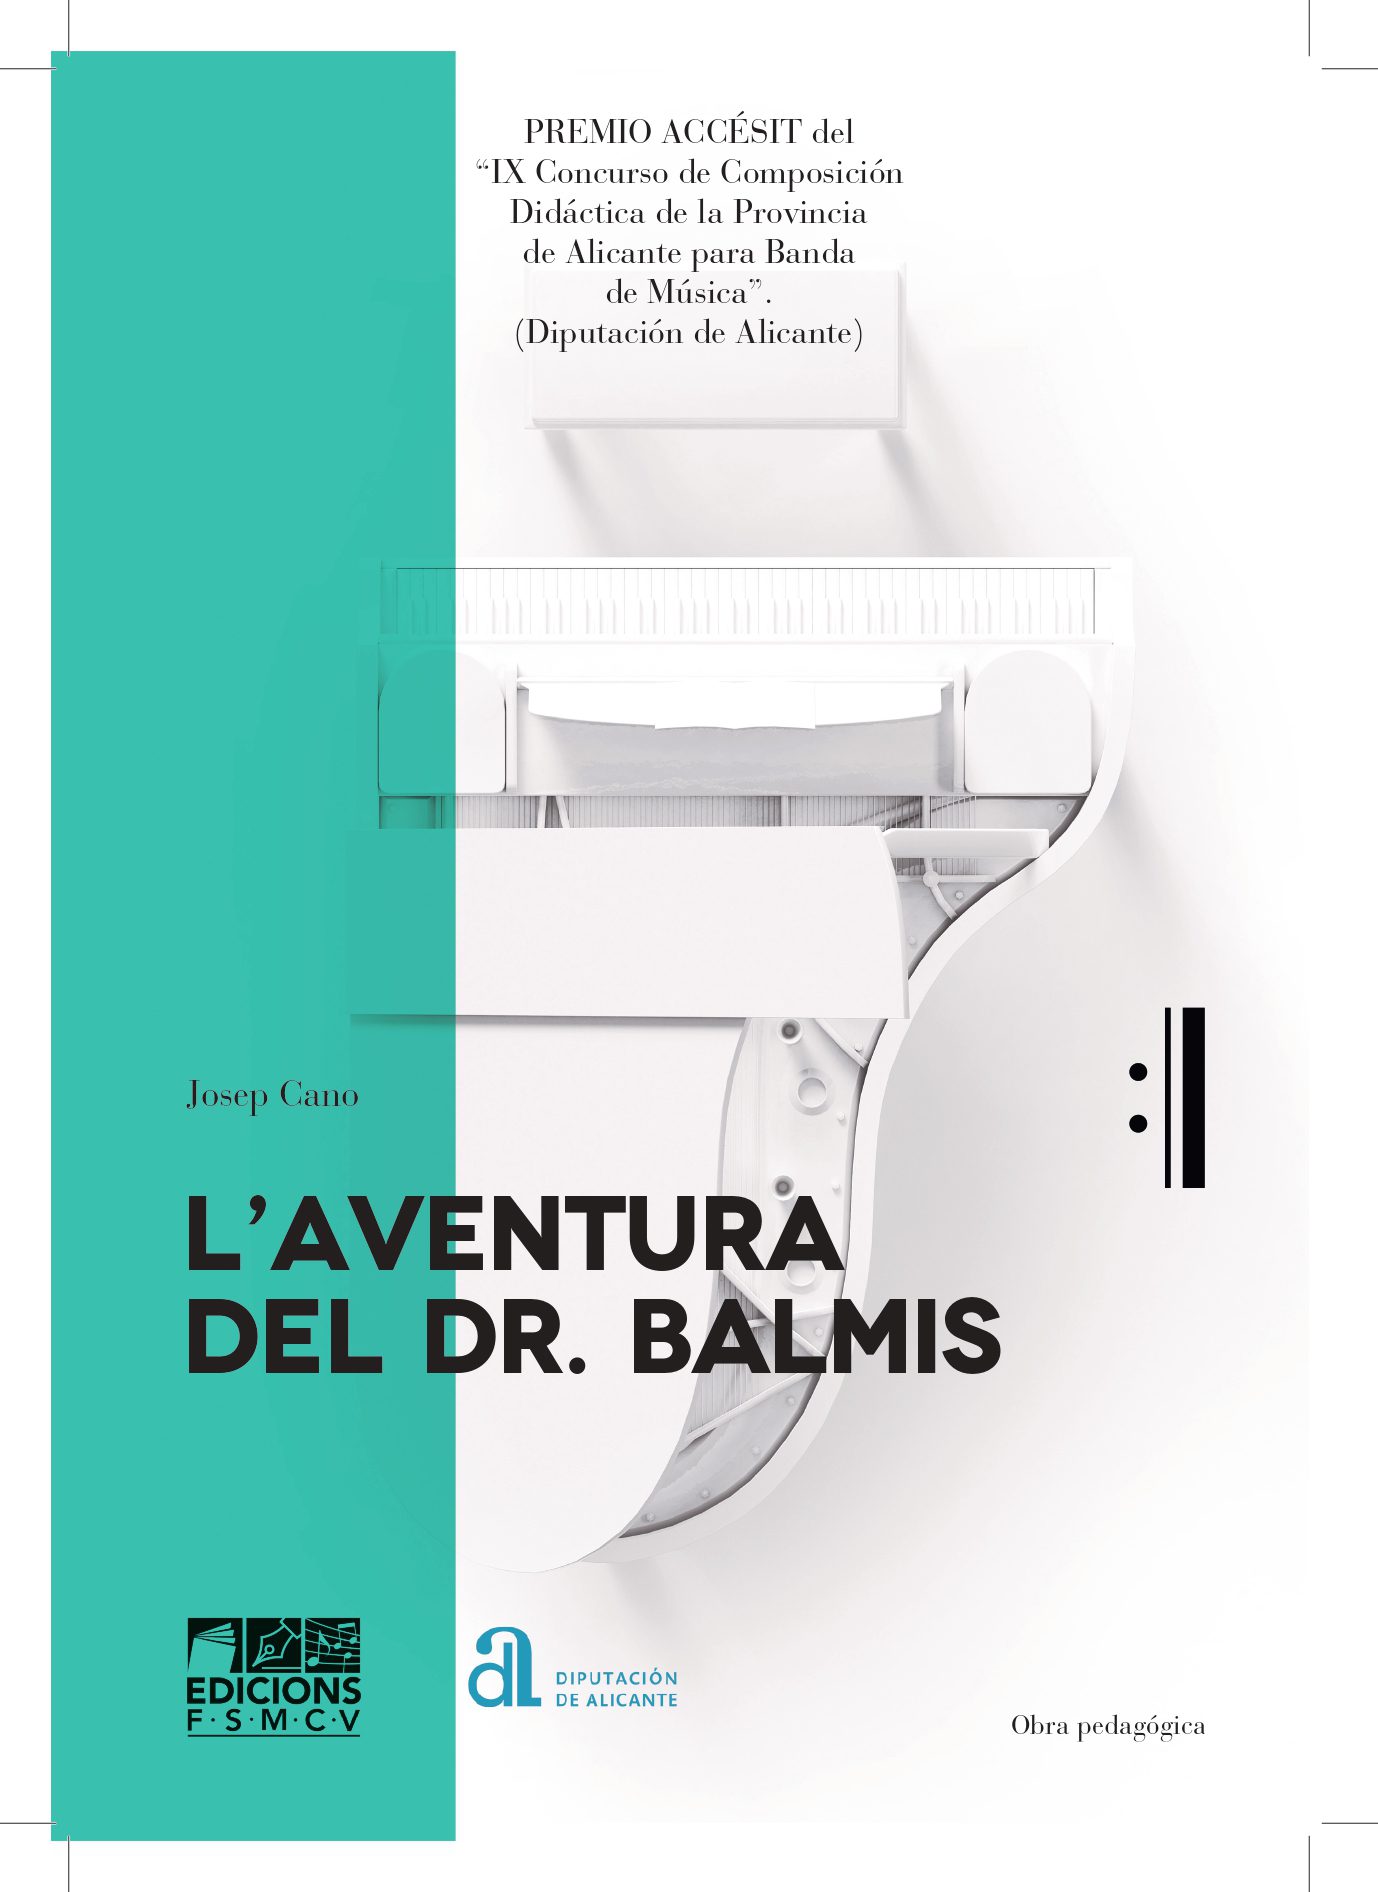 laventura del dr. balmis PORTADAS 1 2 1 page 0001